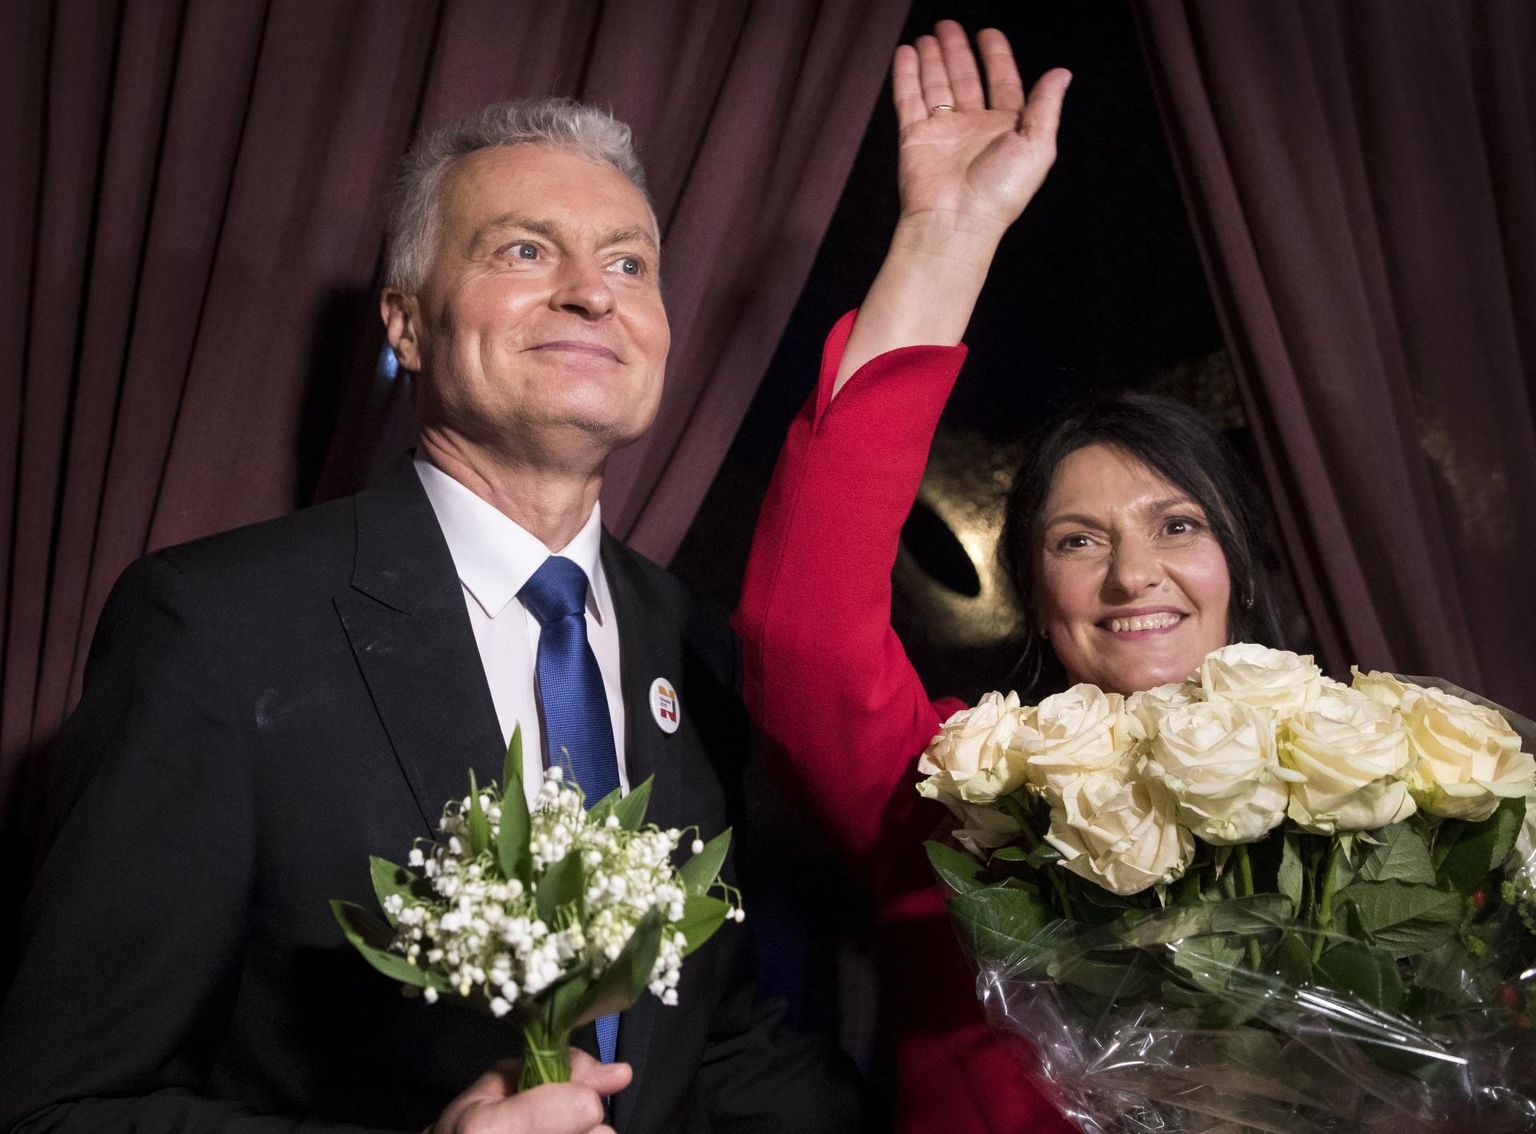 Leedu presidendiks valitud Gitanas Nausėda abikaasa Diana Nausėdienega valimisvõitu tähistamas.